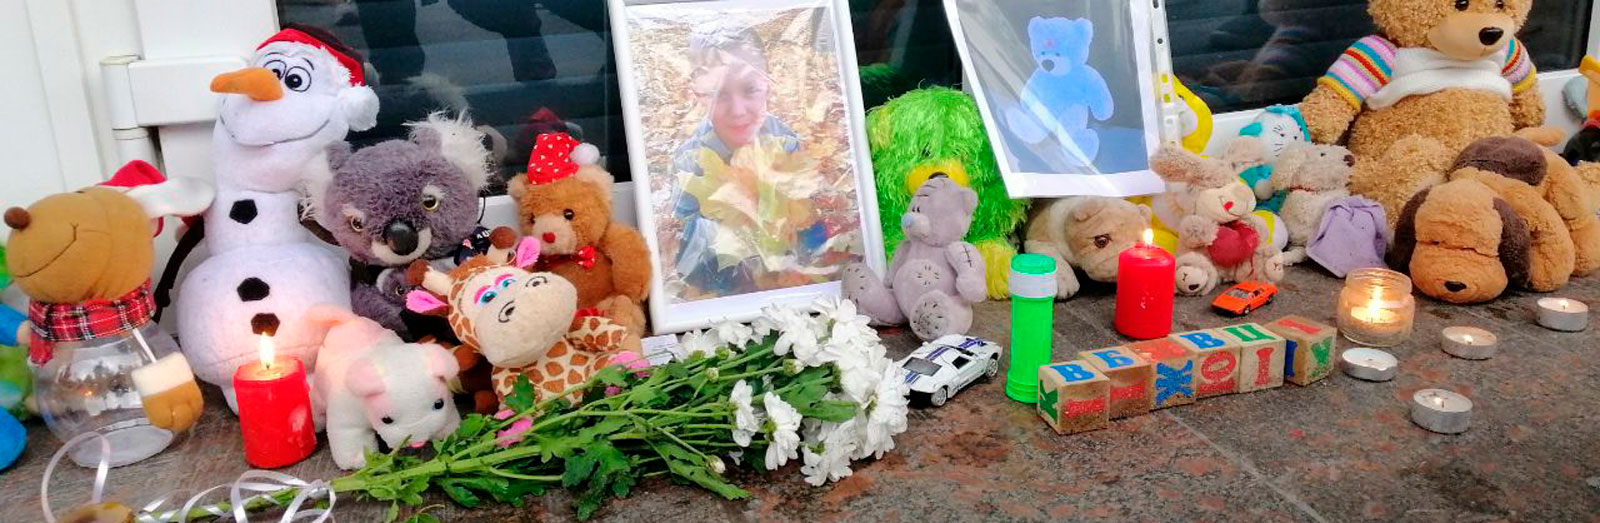 Пьяные развлечения полицейских и убийство 5-летнего Кирилла. Новые подробности трагедии